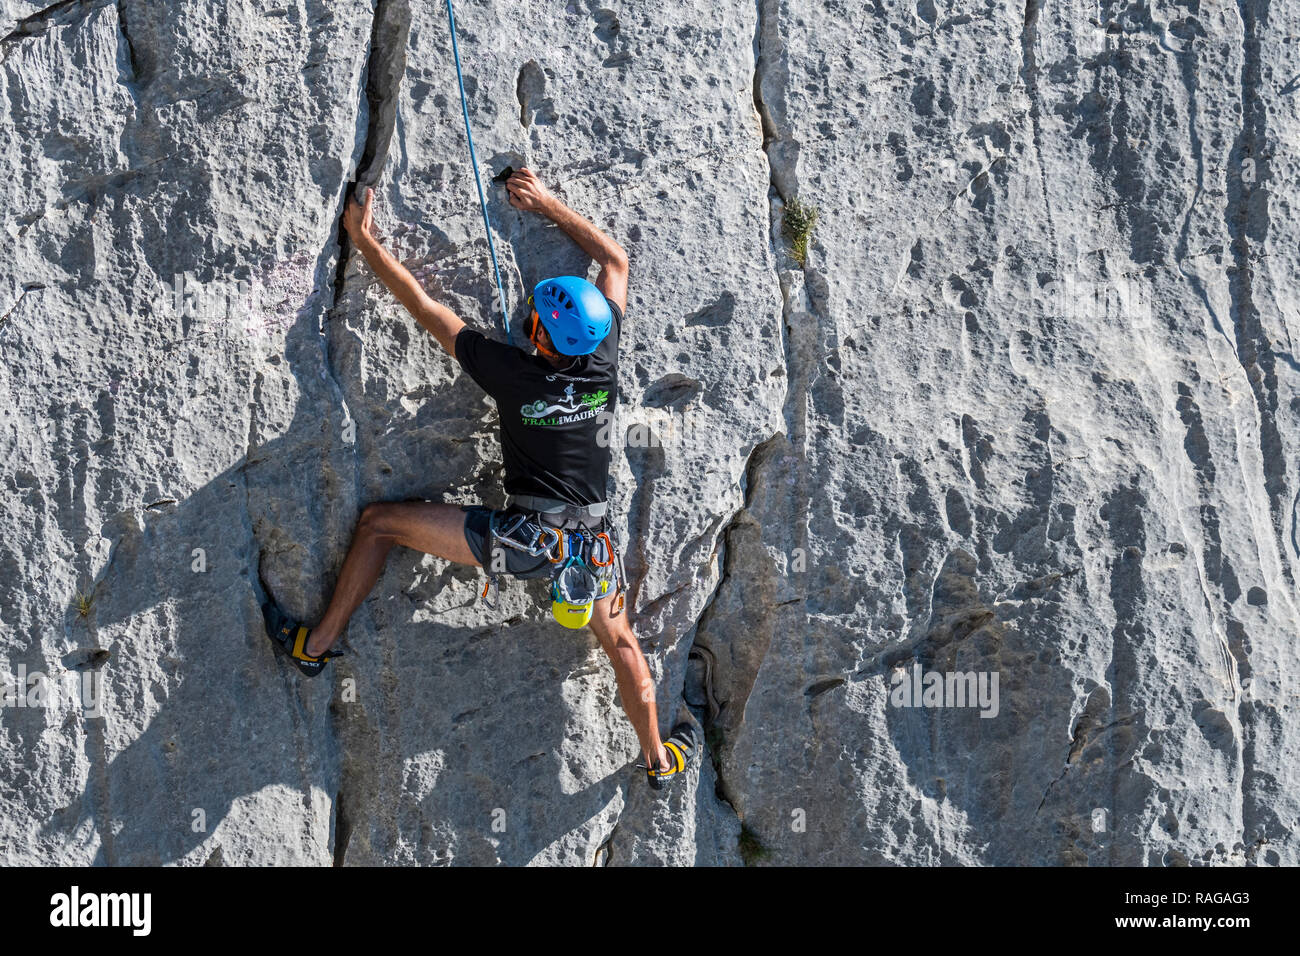 Rock climber climbing rock face in the Gorges du Verdon / Verdon Gorge canyon, Alpes-de-Haute-Provence, Provence-Alpes-Côte d'Azur, France Stock Photo